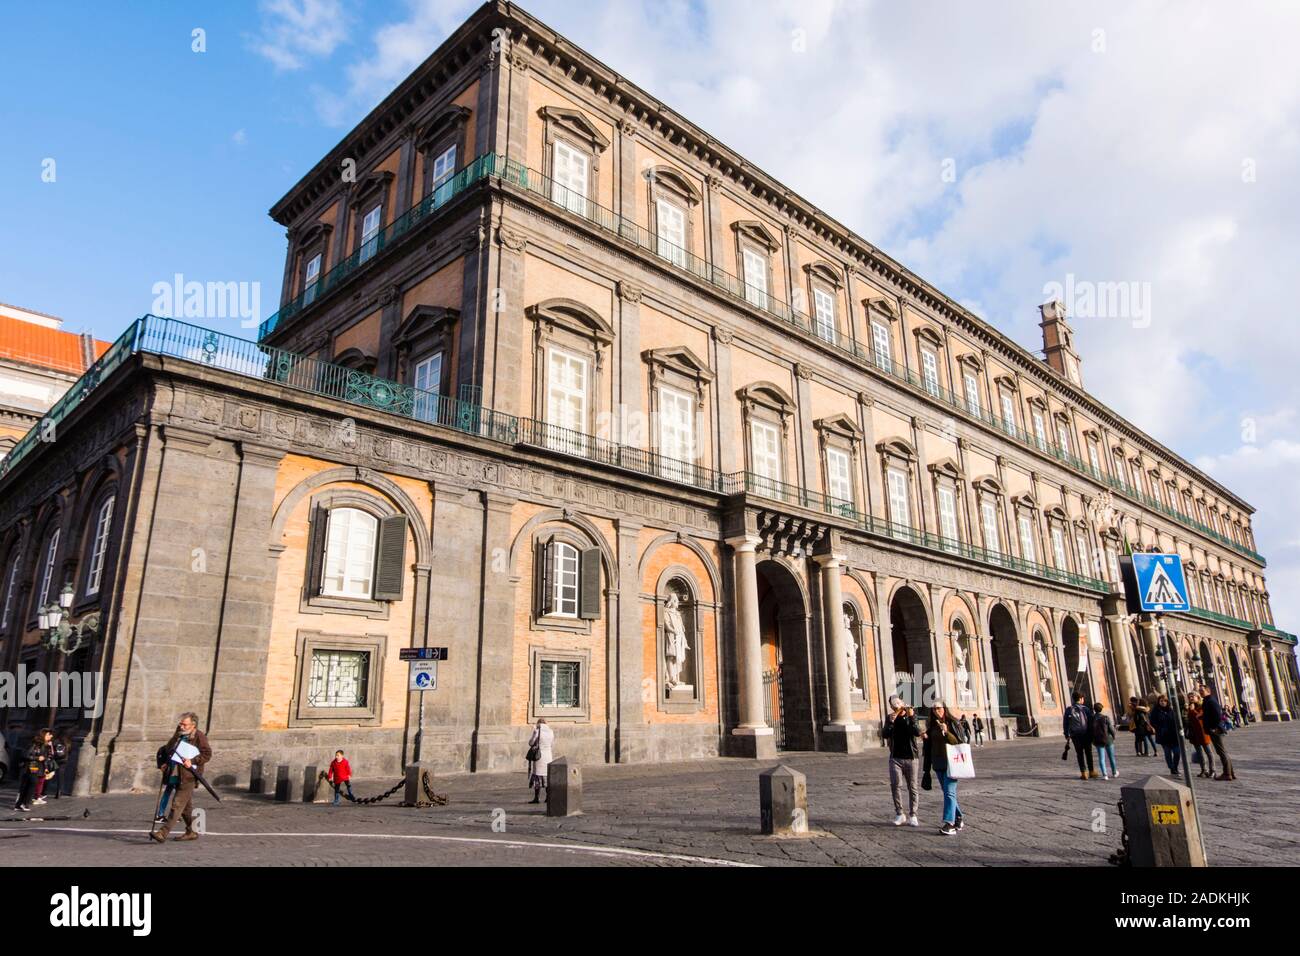 Le Palazzo Reale, le Palais Royal, Piazza del Plebiscito, Naples, Italie Banque D'Images